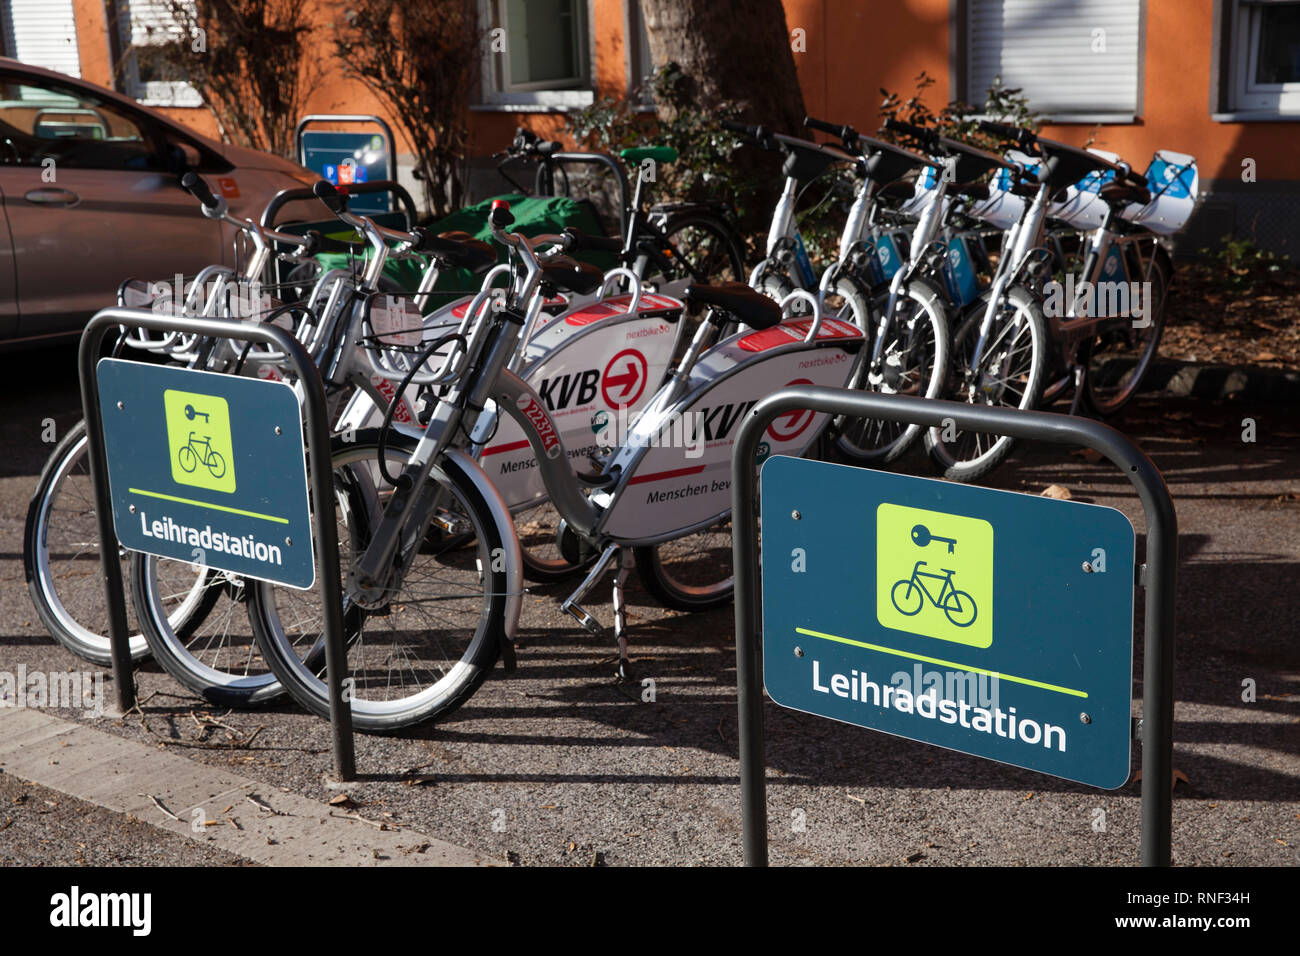 En Mobilstation Severins Josephstreet en el distrito, Colonia, Alemania. La estación ofrece carsharing, bikesharing, carga y compartir bicicleta bike parki Foto de stock